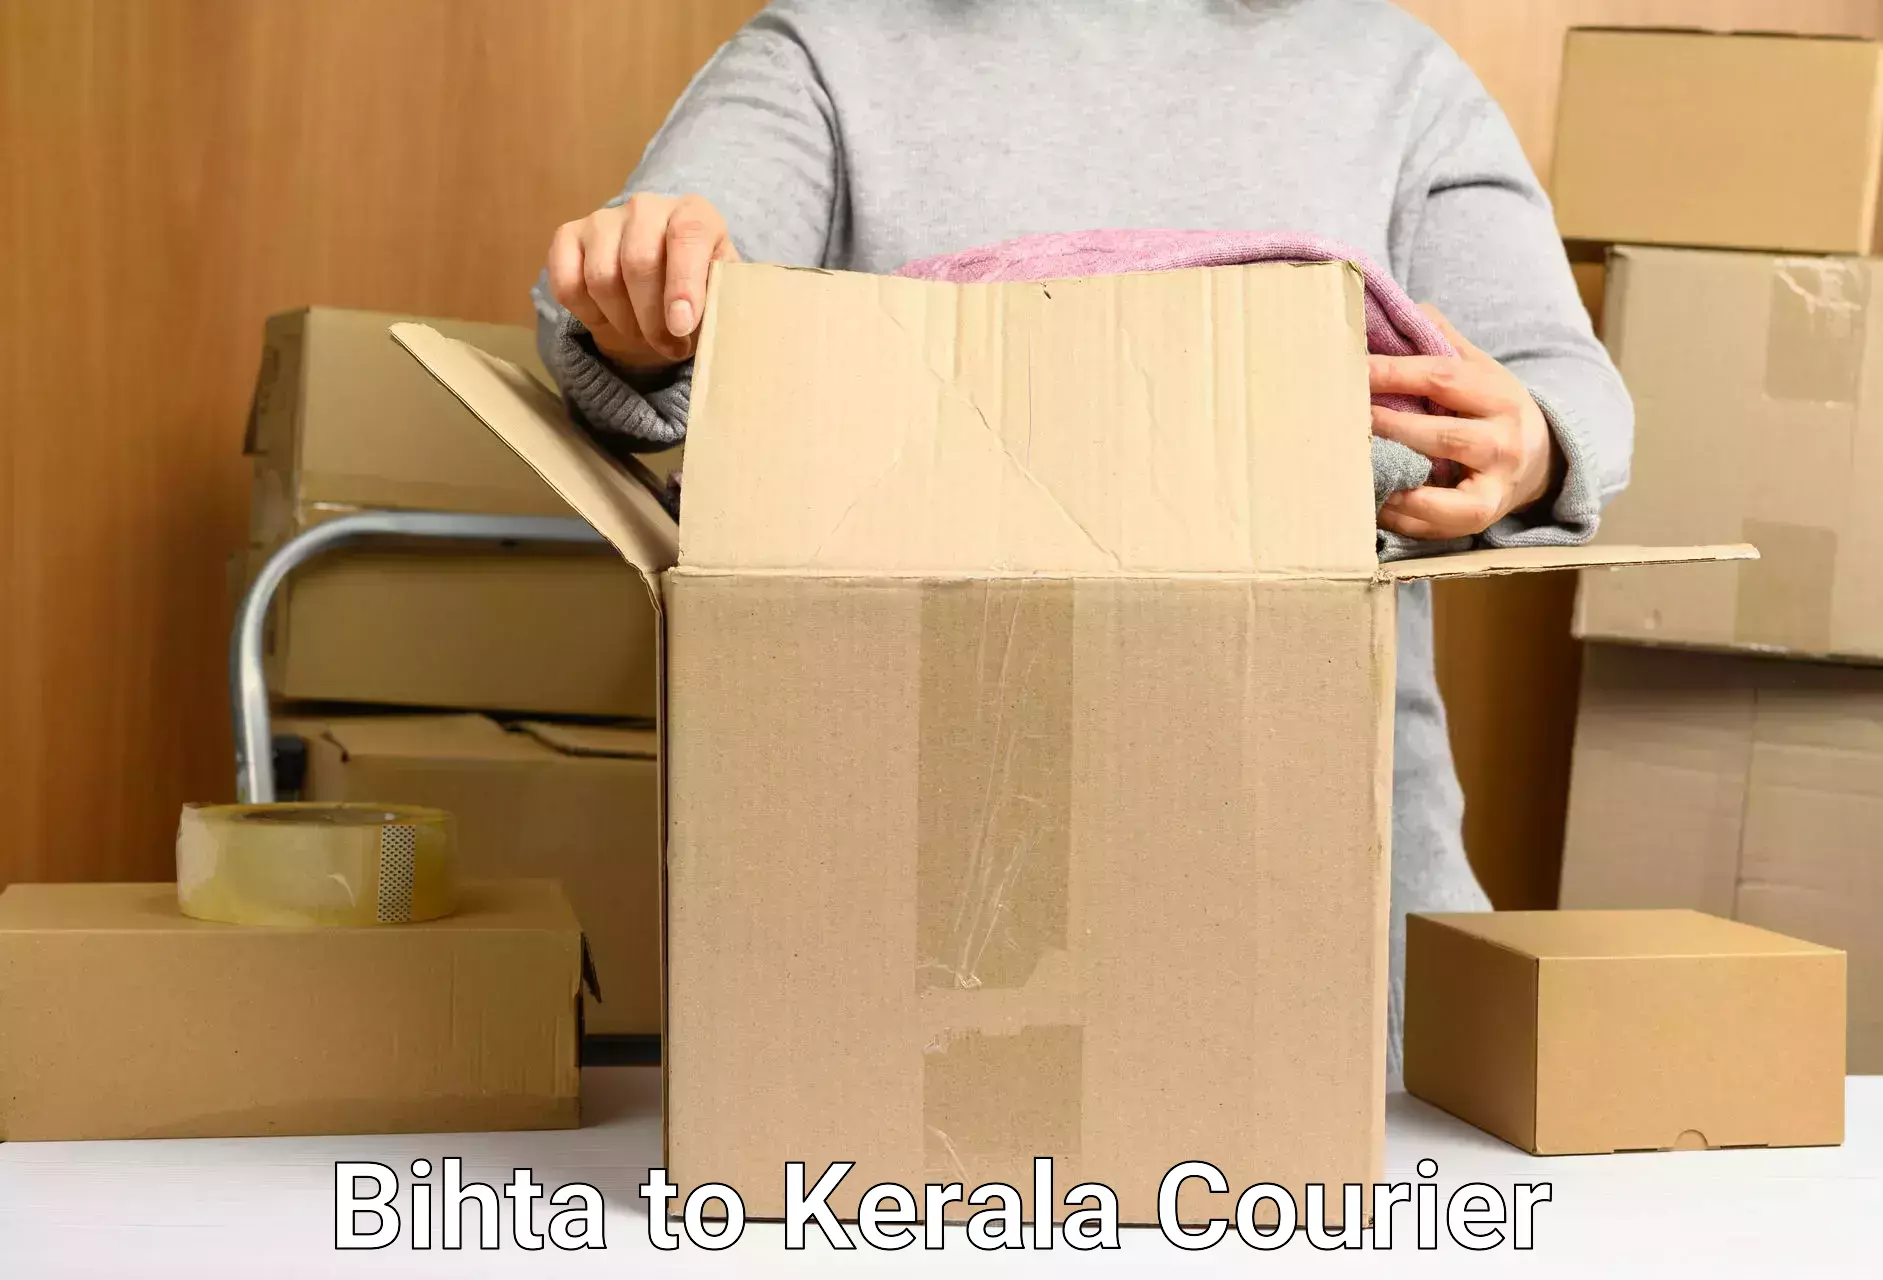 Efficient parcel service Bihta to Chervathur